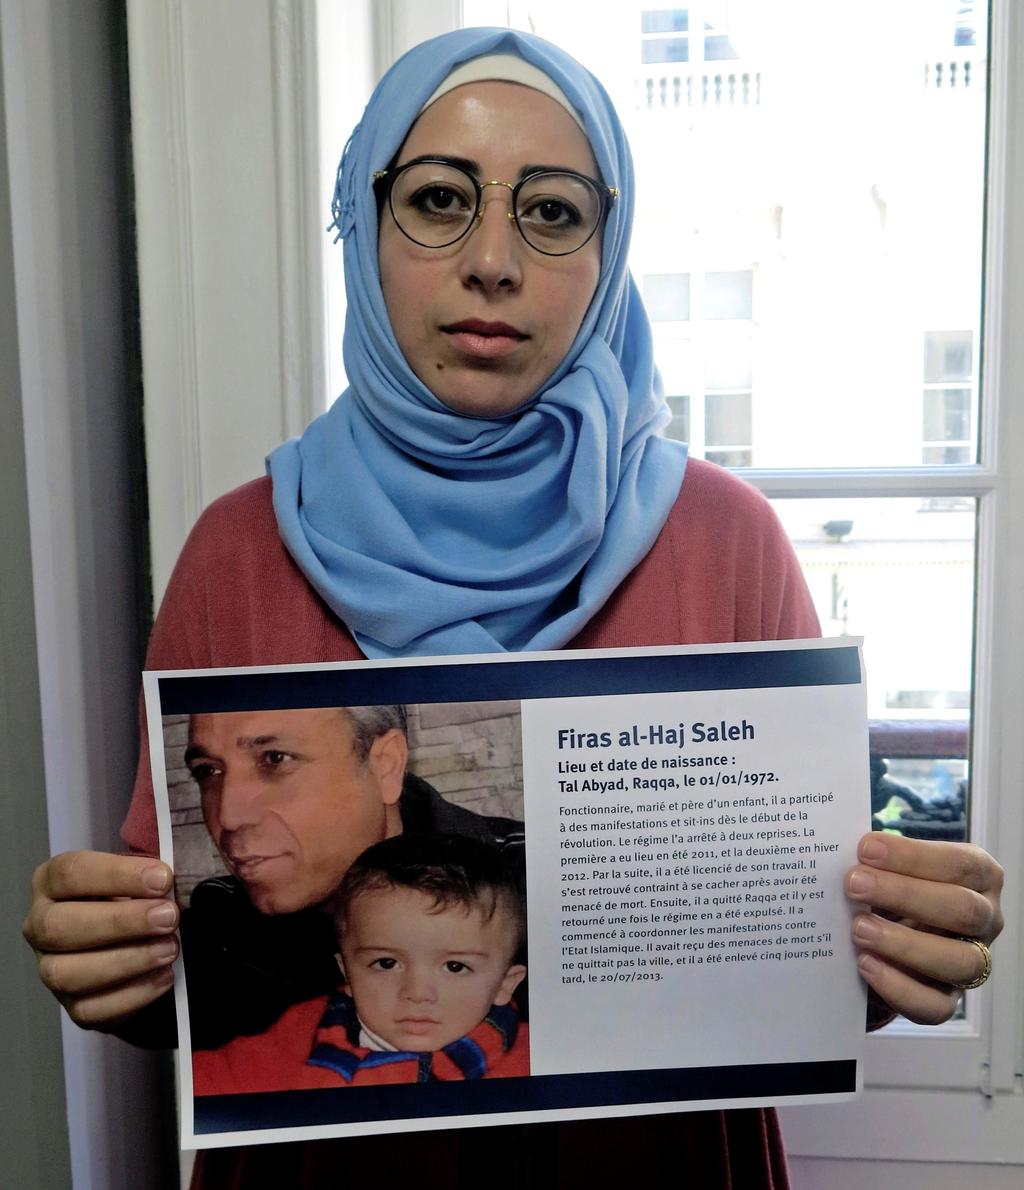 Hace seis años que Gadhir Nawfal no sabe del paradero de su esposo, Firas Al-Haj Salej, desaparecido en la ciudad de Raqqa, Siria. Nwafal, actualmente residente en Países Bajos, decidió unirse a la coalición de familiares de las víctimas del Estado Islámico (EI). (EFE)